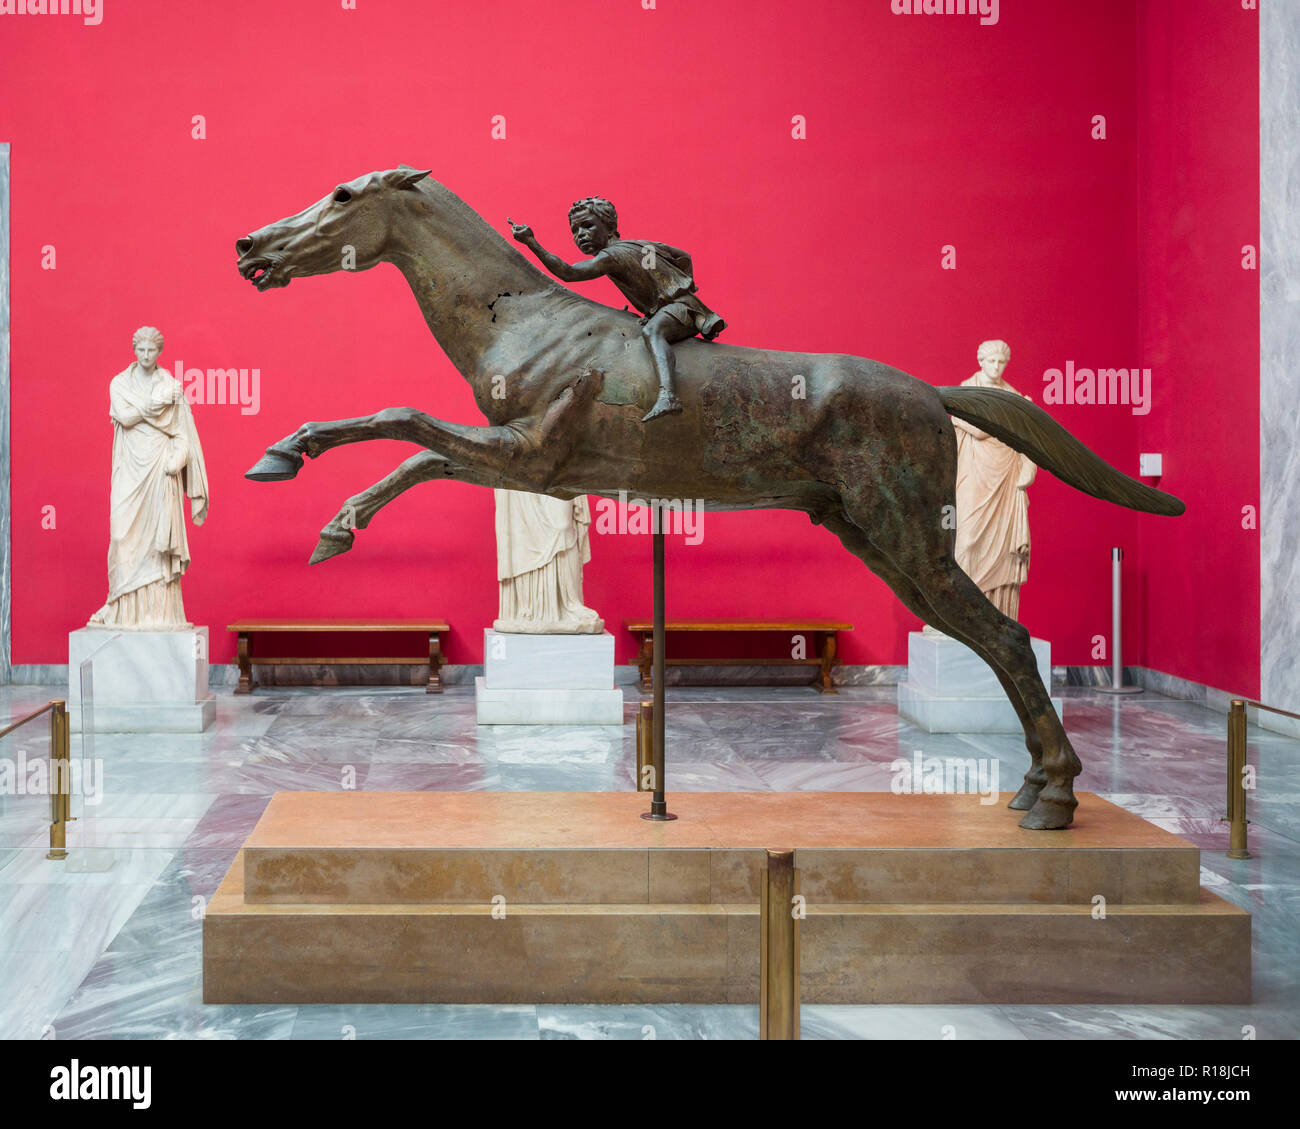 Athènes. La Grèce. L'Artemision Jockey, statue en bronze d'un cheval et le jeune jockey, du ca. 140 av. J.-C. Musée National Archéologique d'Athènes. La st Banque D'Images